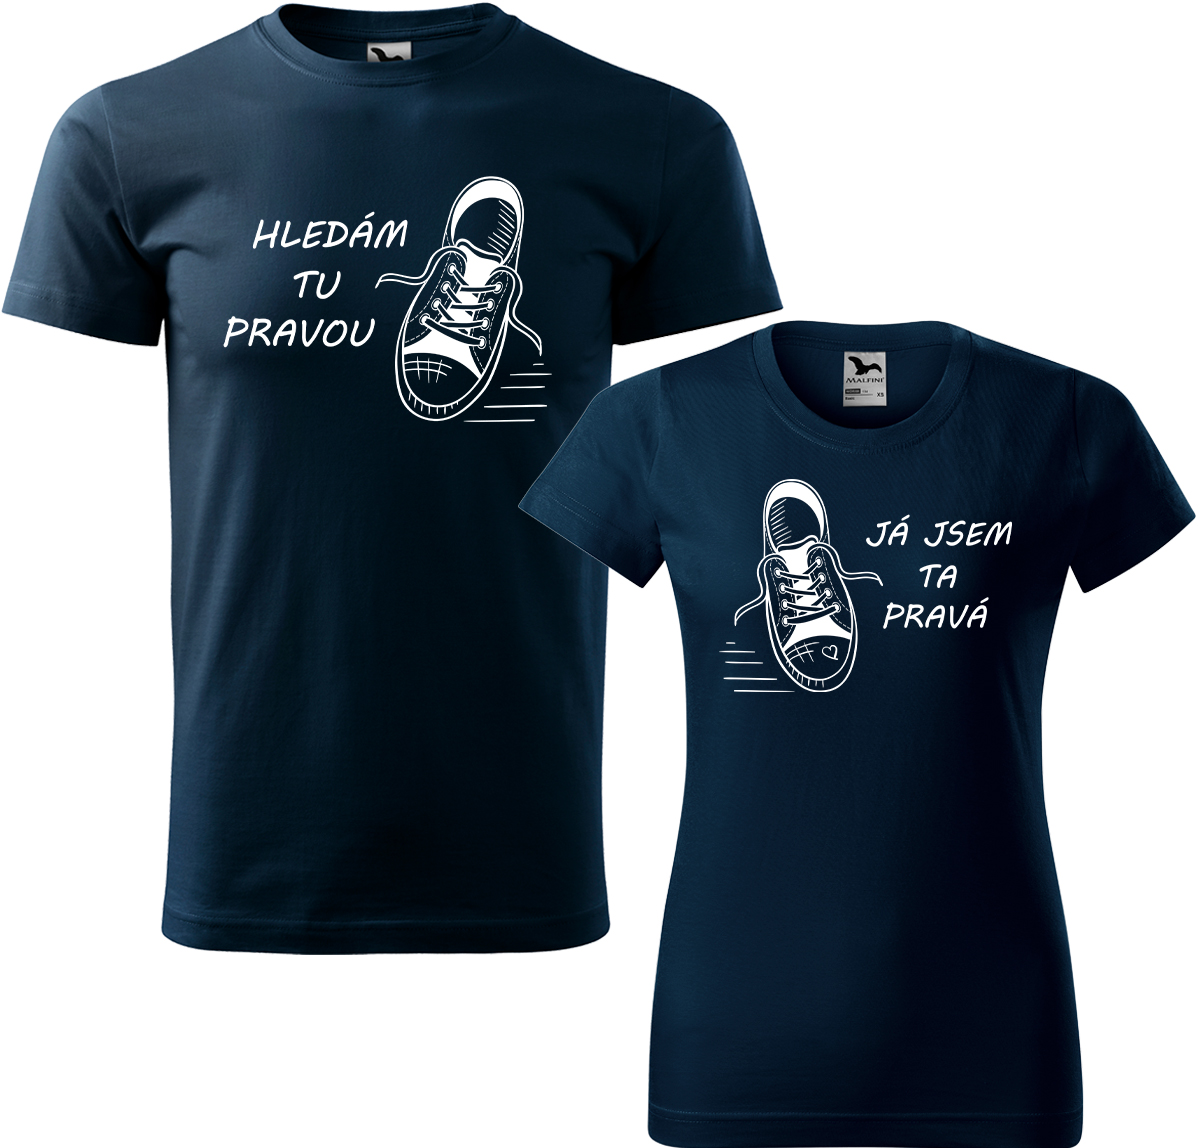 Trička pro páry - Kecky Barva: Námořní modrá (02), Velikost dámské tričko: 3XL, Velikost pánské tričko: 4XL